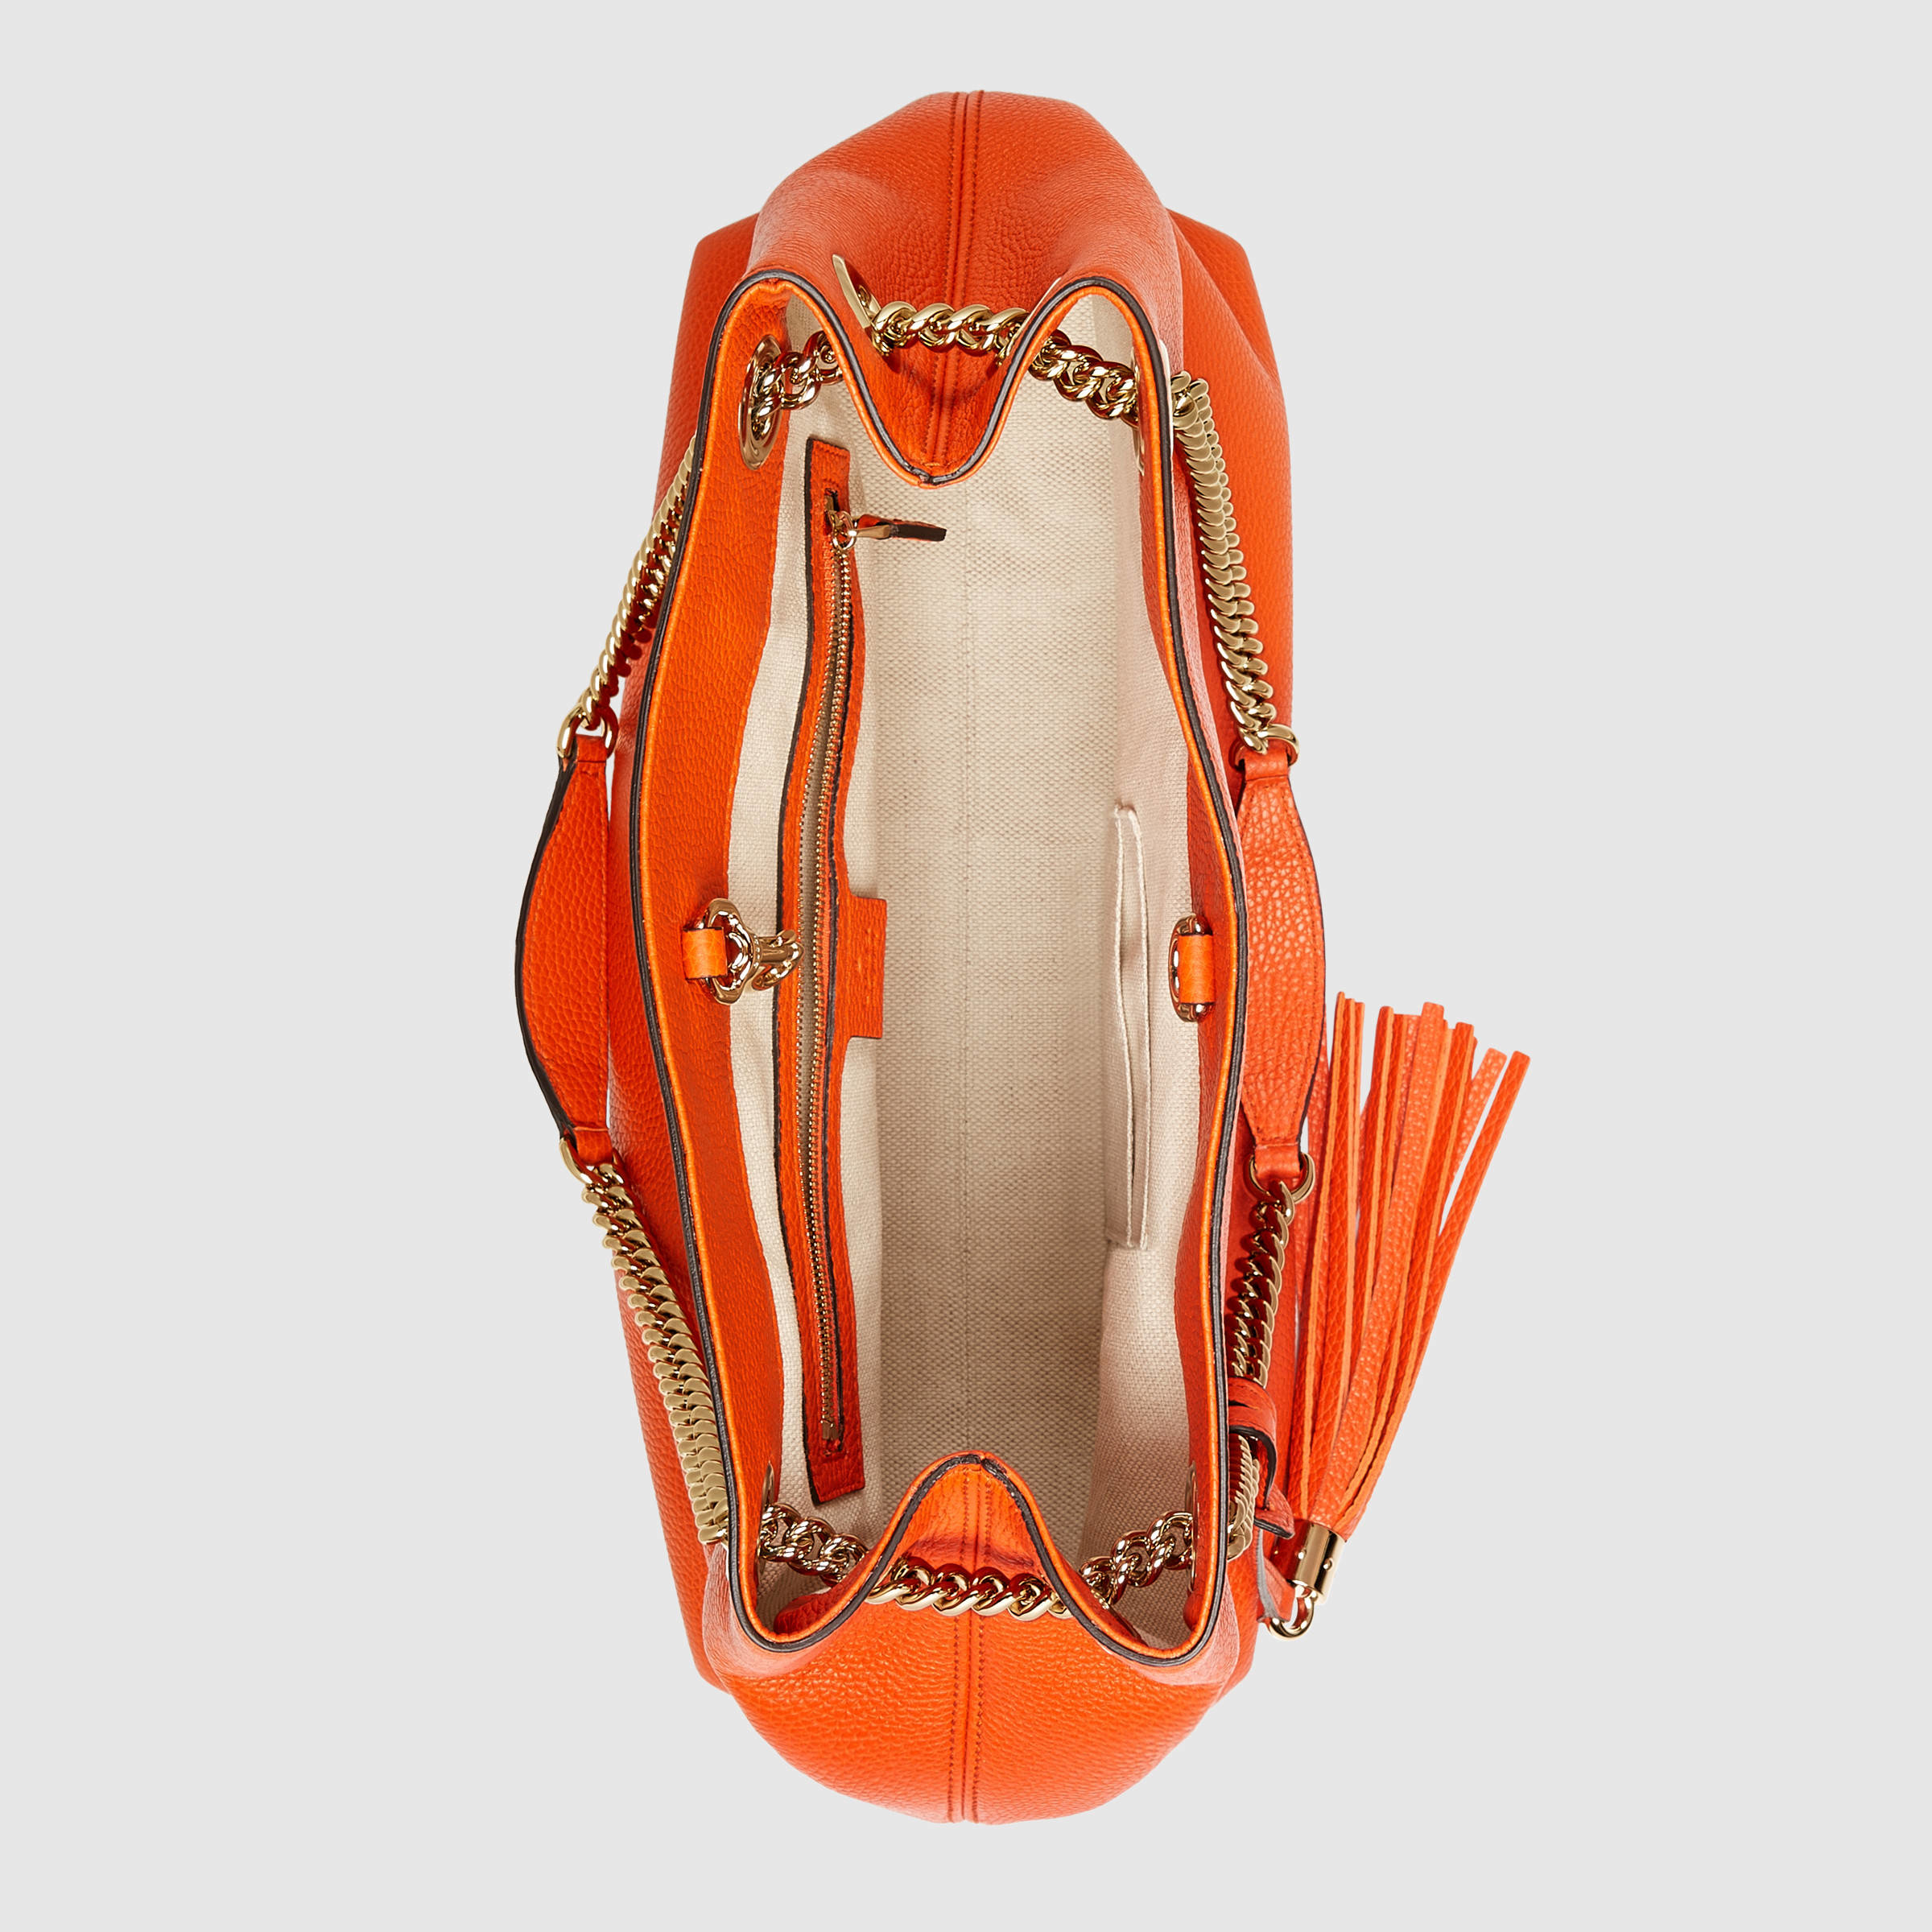 Gucci Soho Leather Shoulder Bag in Orange - Lyst